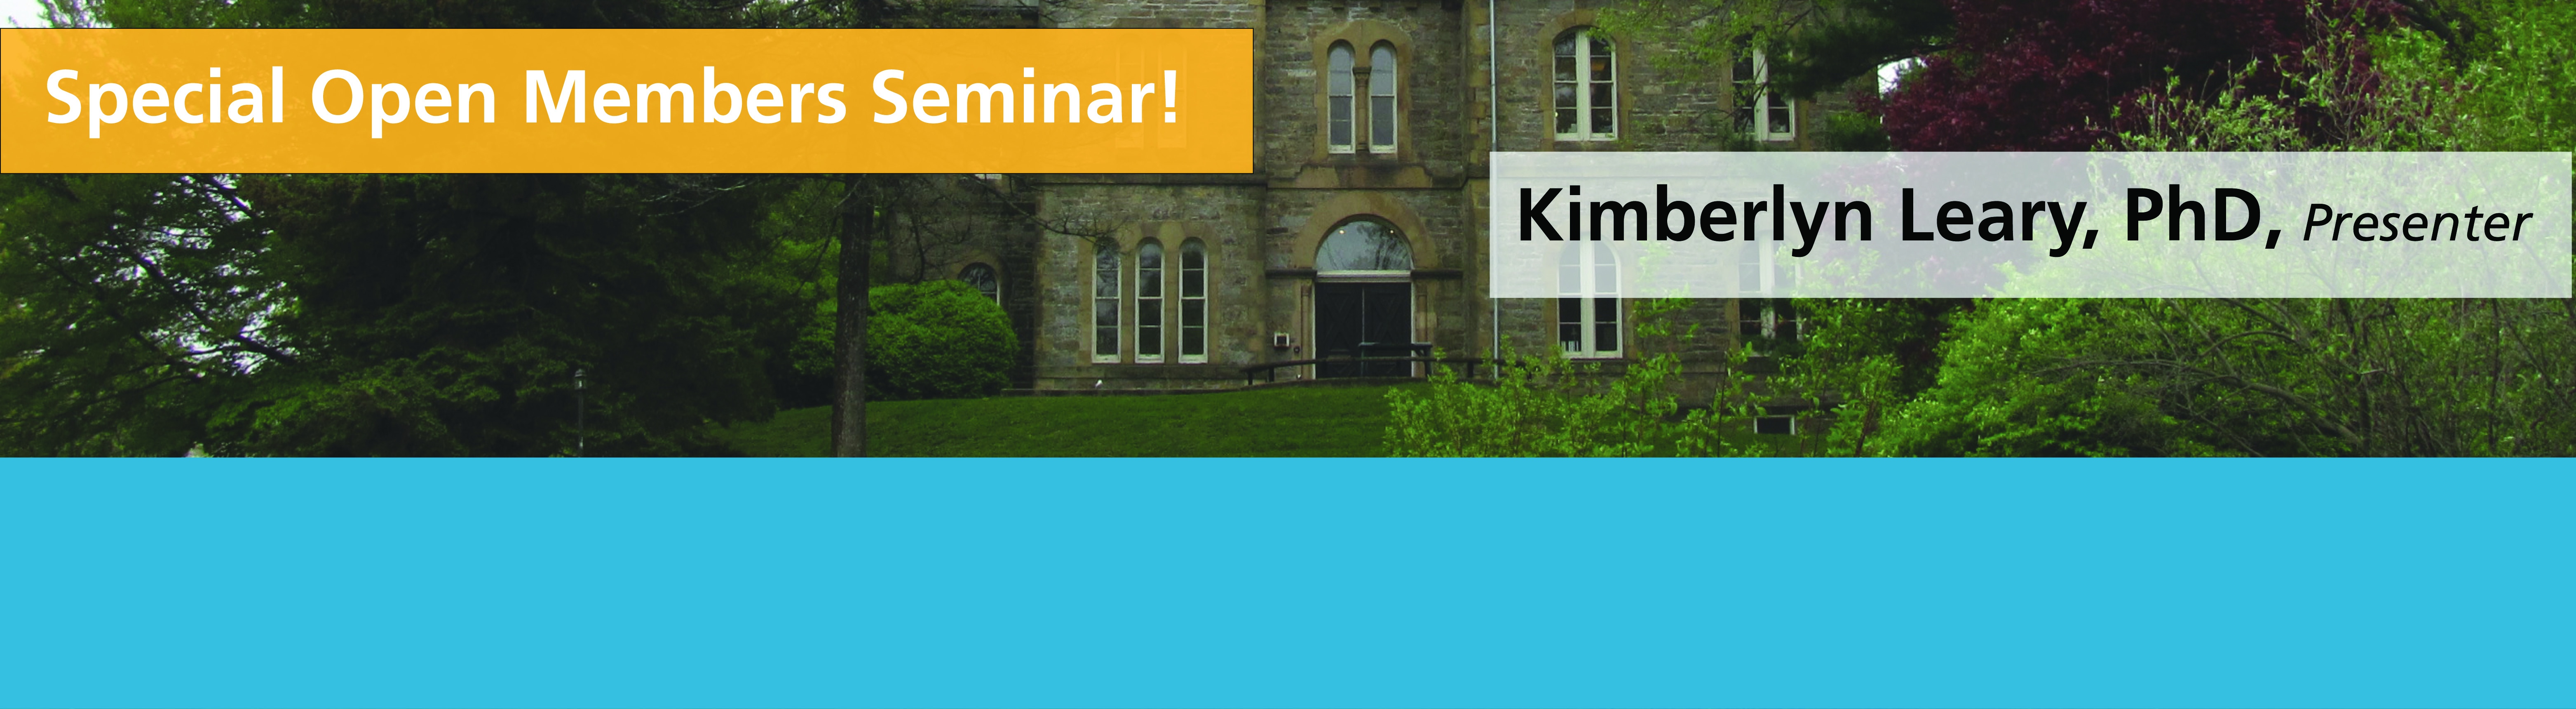 Open Members Seminar: Kimberlyn Leary, PhD